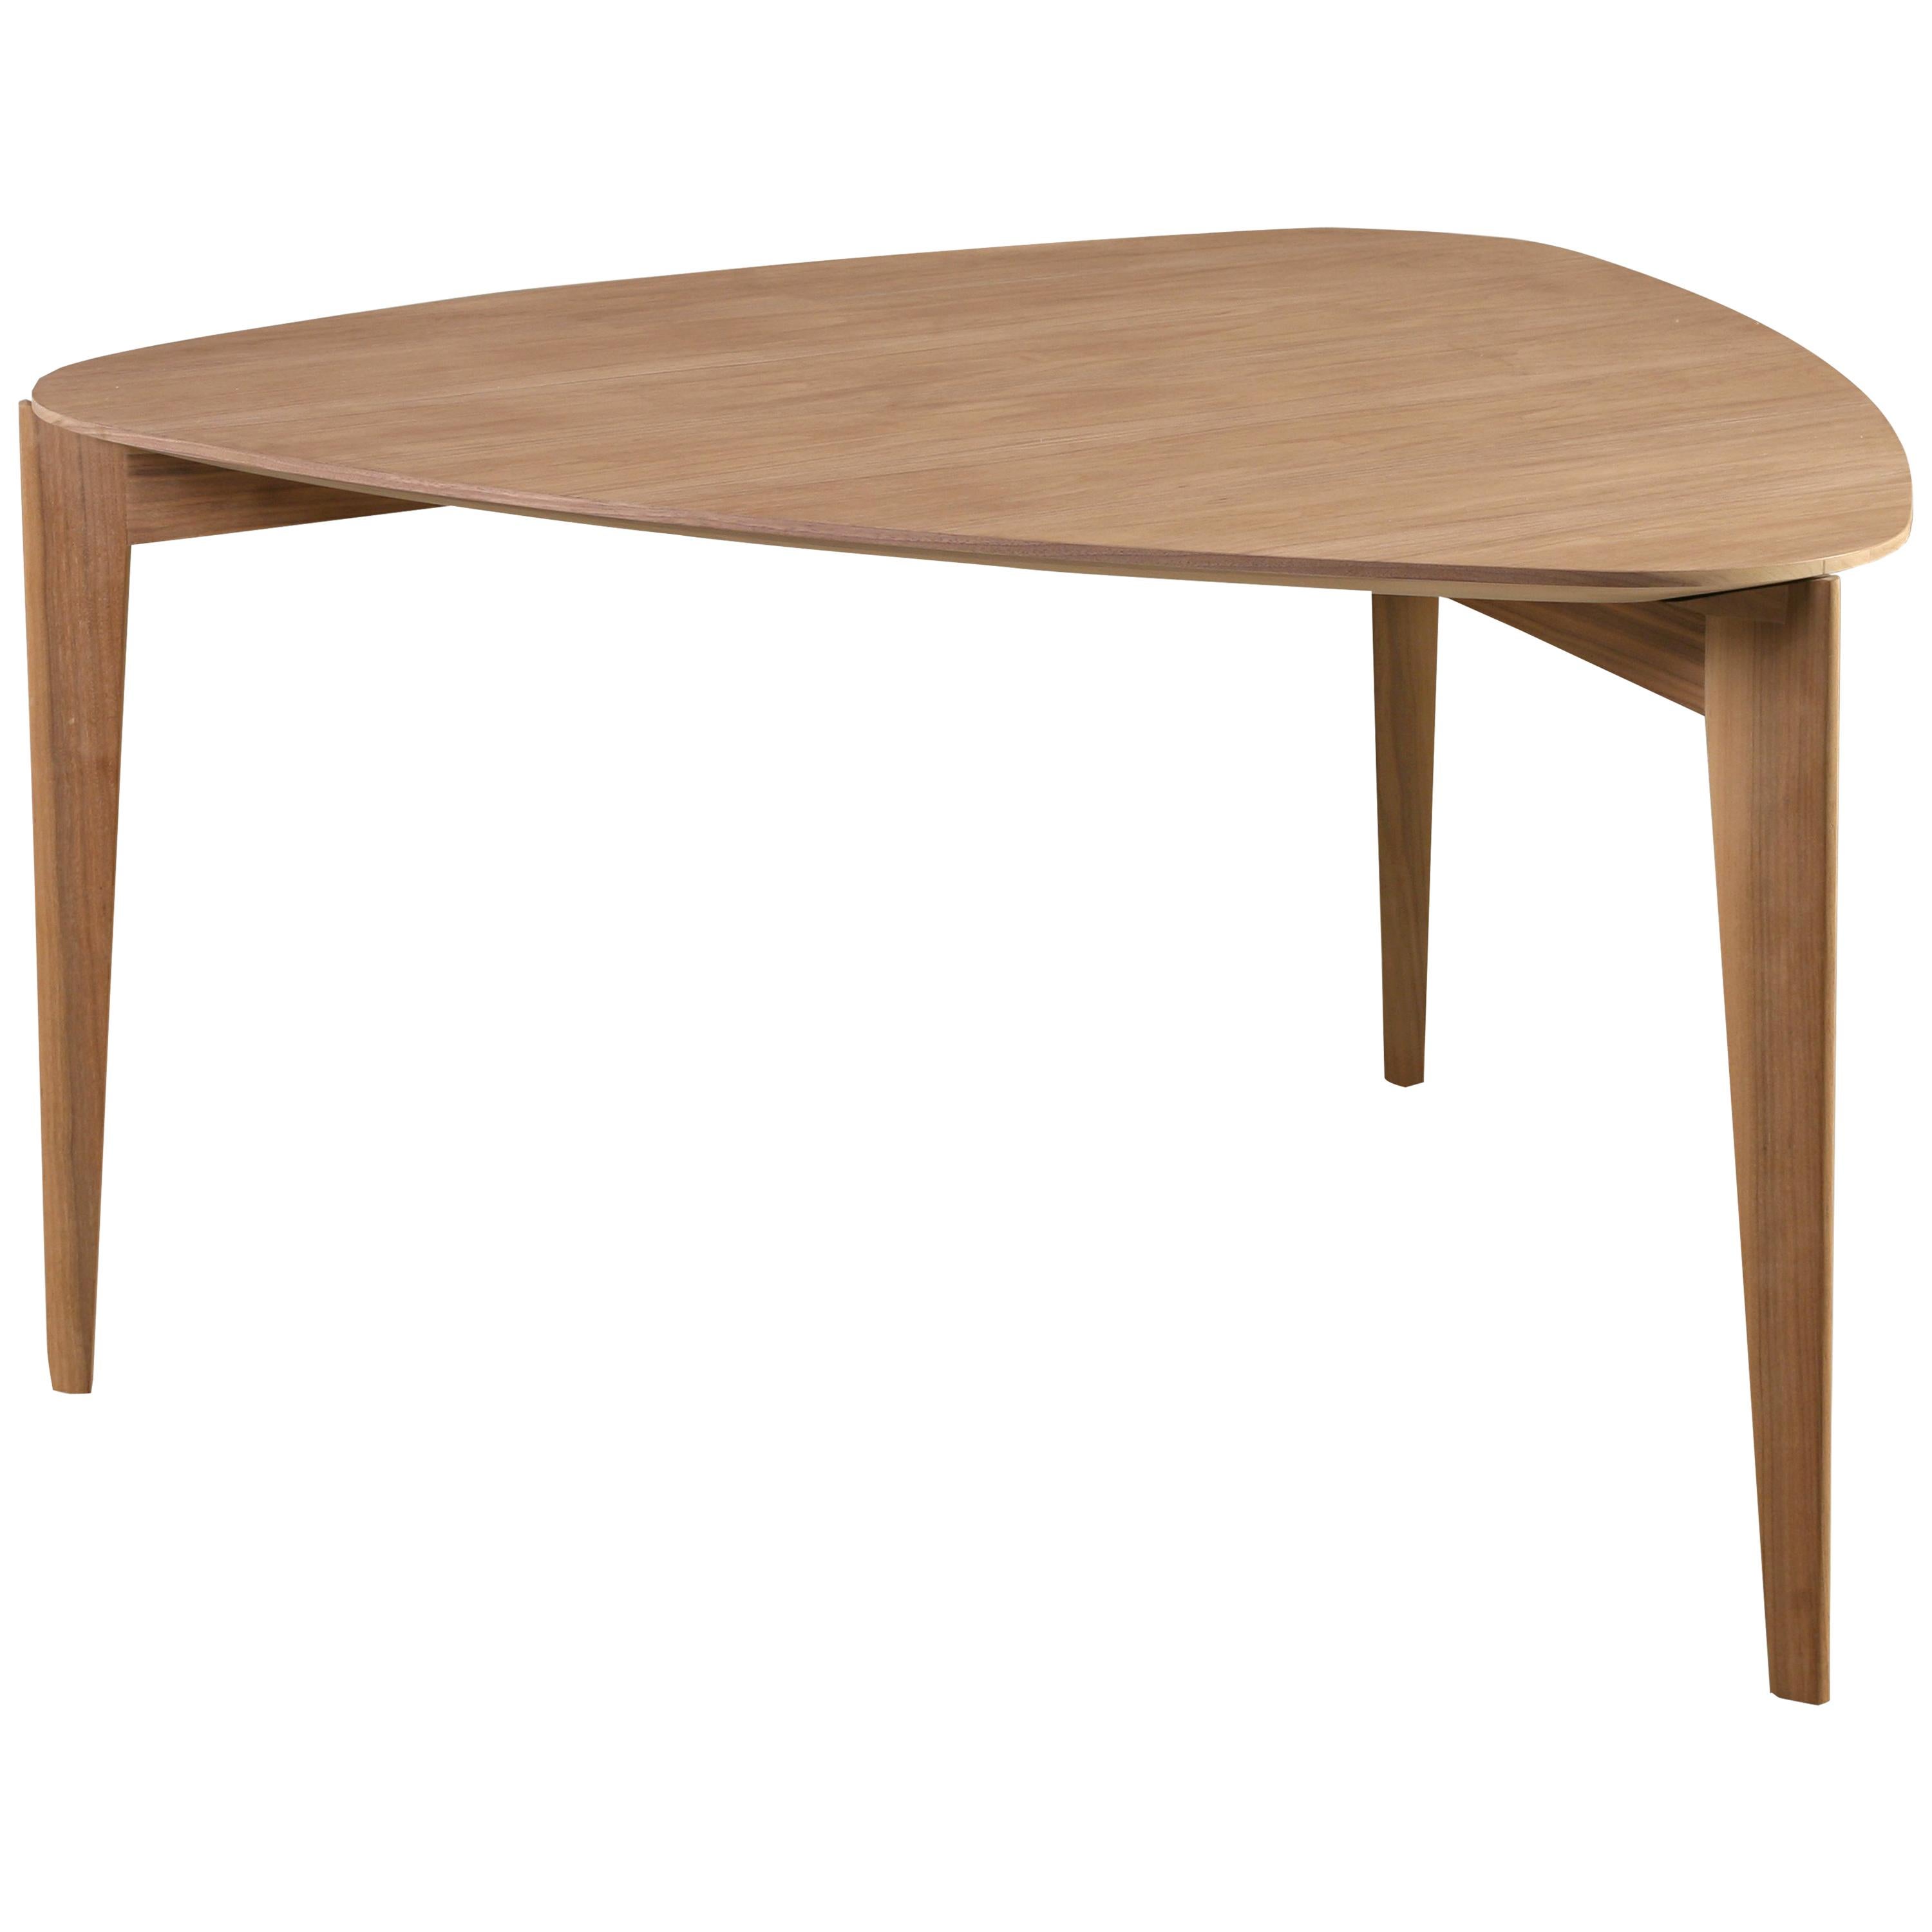 Trident, zeitgenössischer Tisch aus Eschenholz mit dreieckiger Platte, von Morelato